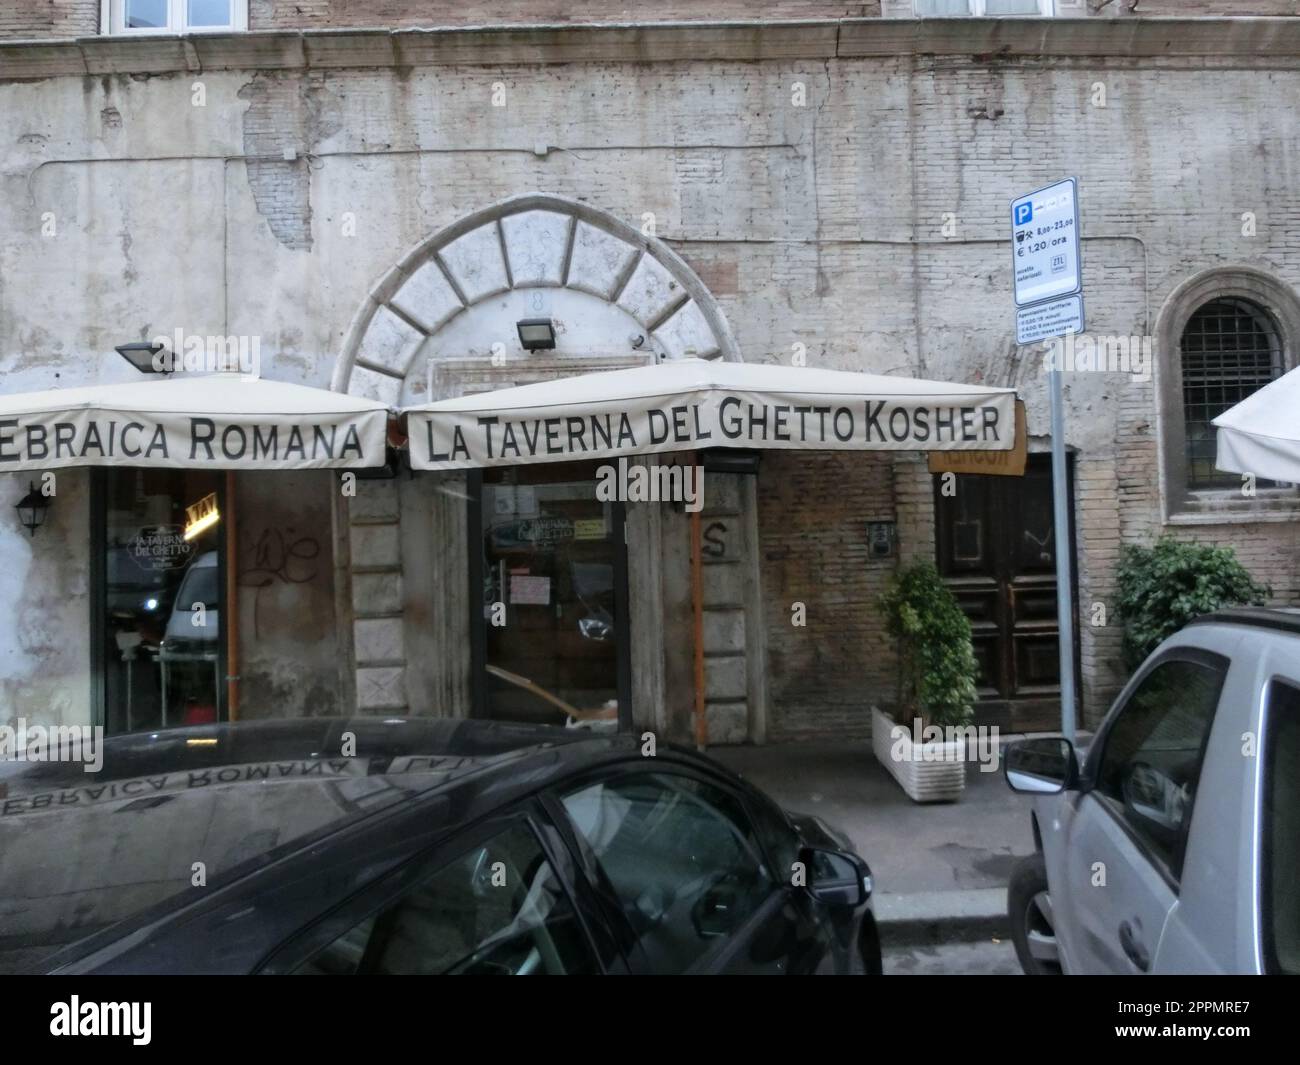 Roma, Italia - 02 maggio 2014: Ebraica Romana la taverna del Ghetto Kosher Foto Stock